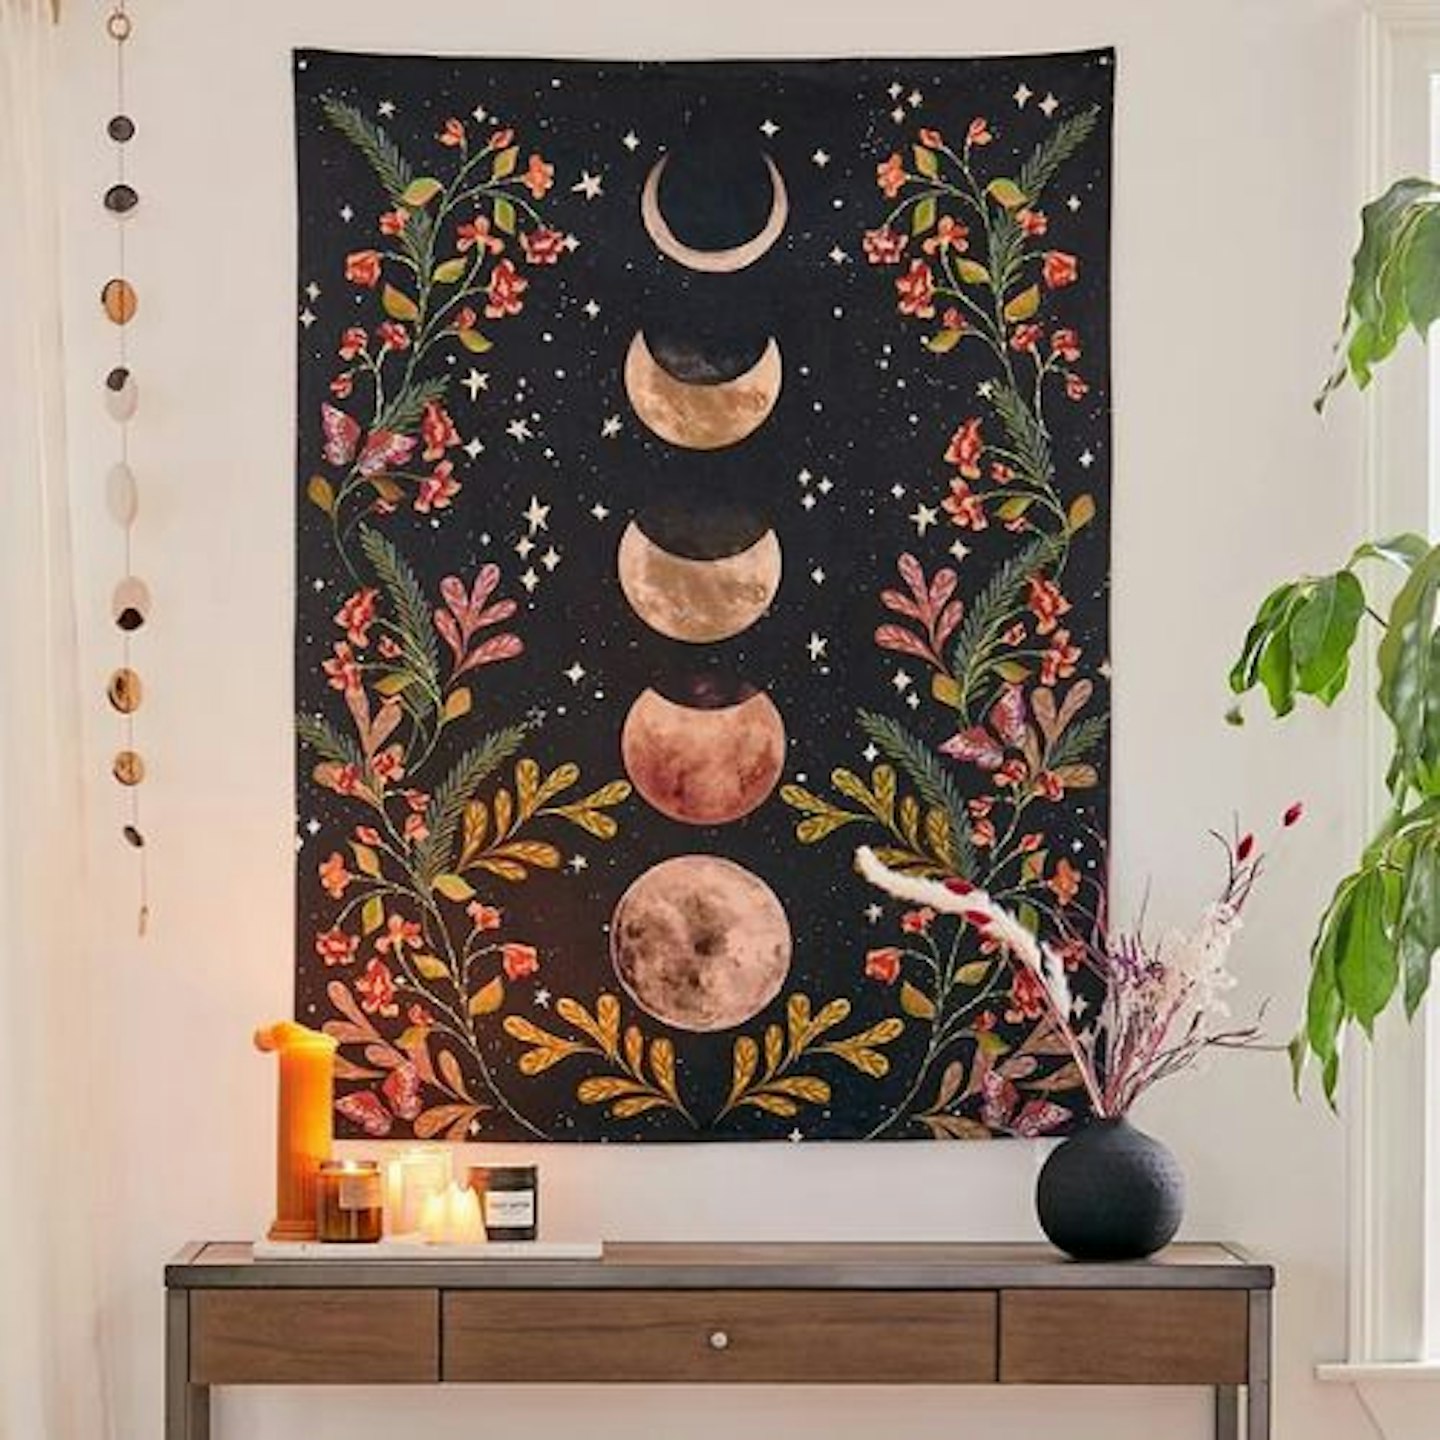 Moonlight Tapestry